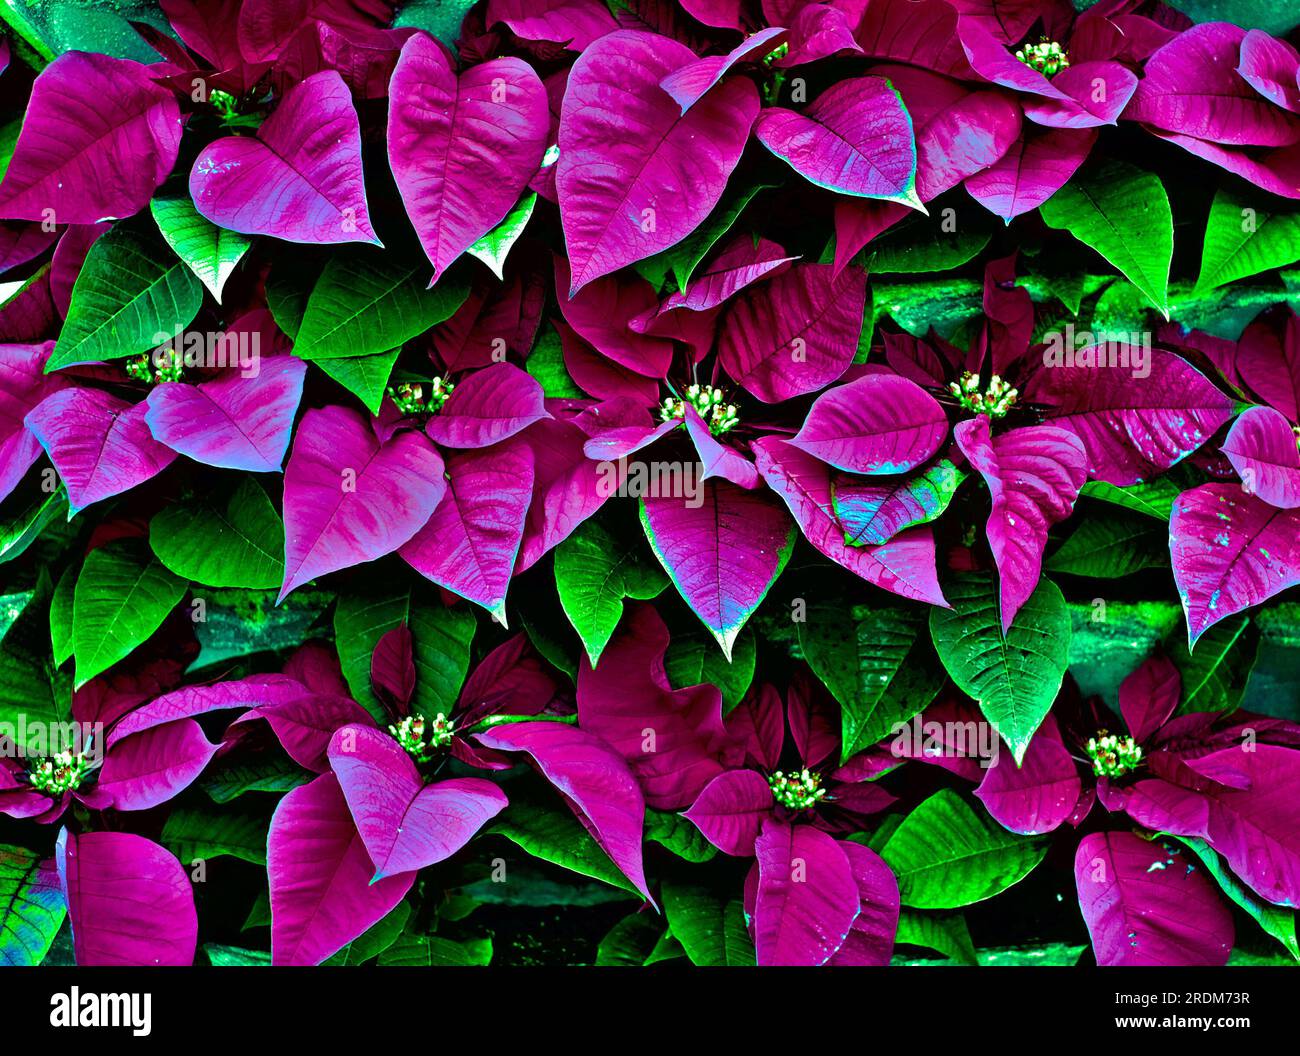 Feuilles et fleurs colorées et vibrantes (Euphorbia pulcherrima), image aux tons divisés, matériel pour la conception graphique à utiliser dans les fonds floraux de Noël Banque D'Images